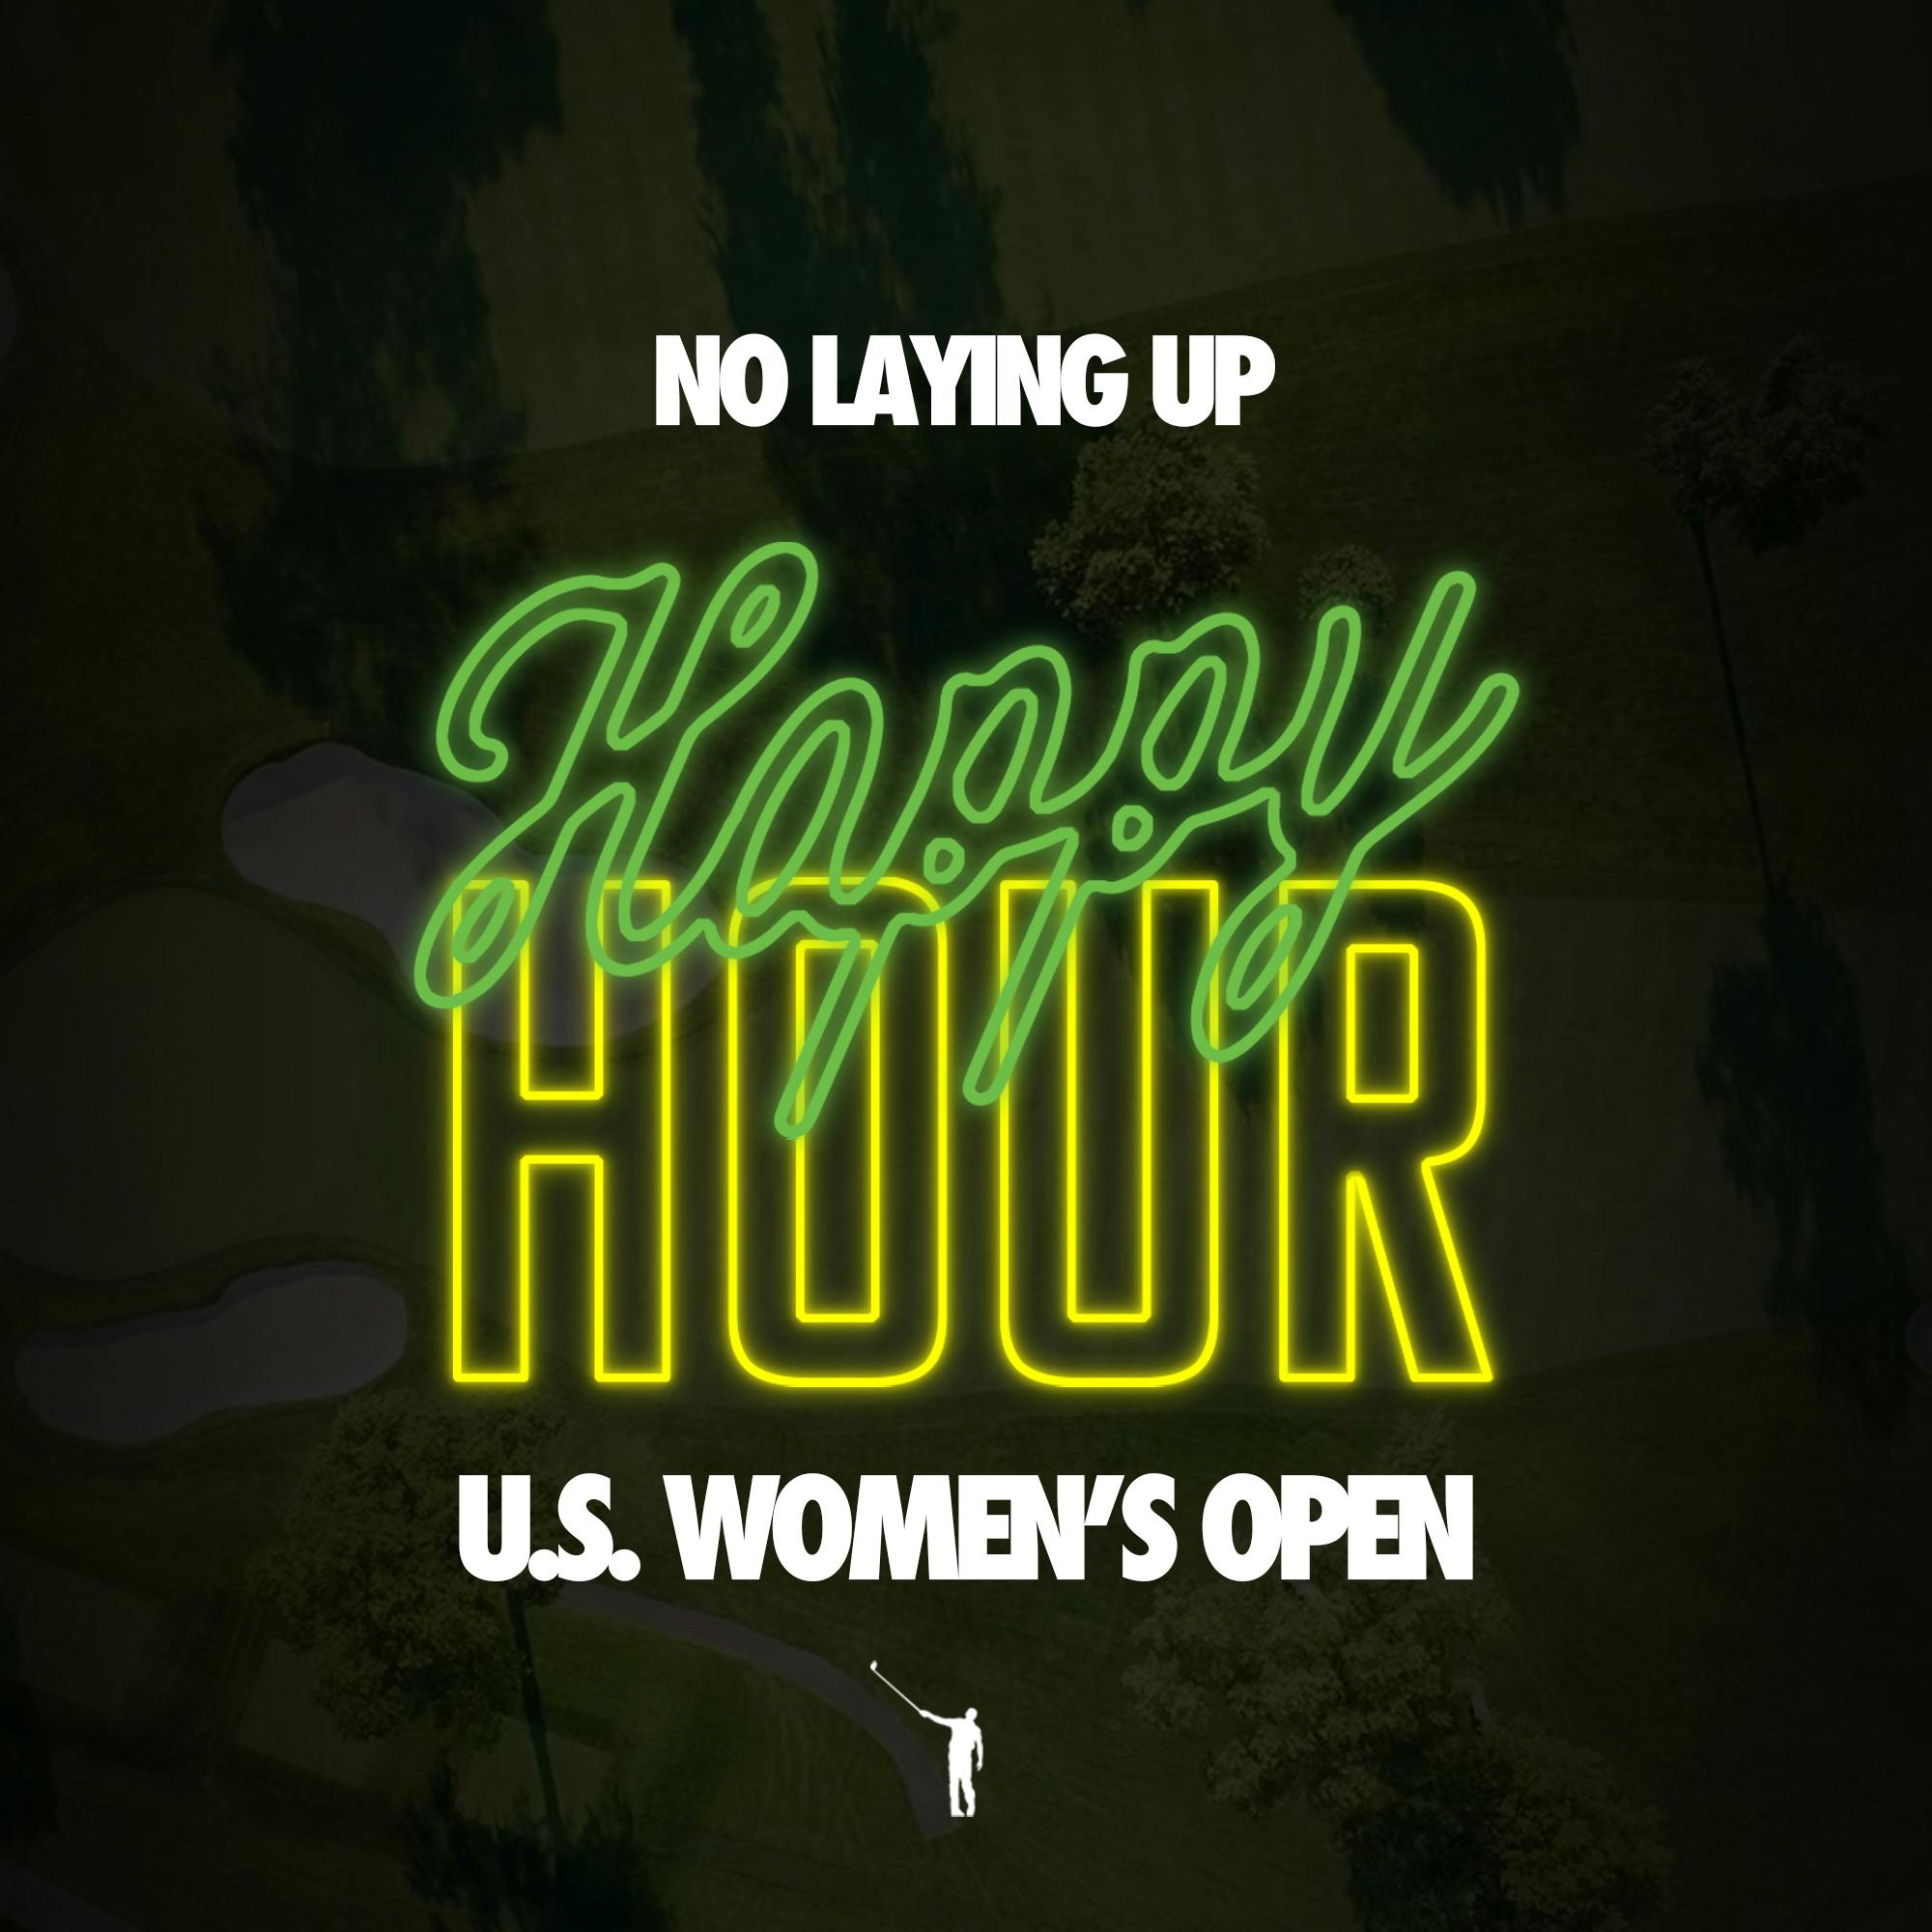 844 - U.S. Women's Open Happy Hour